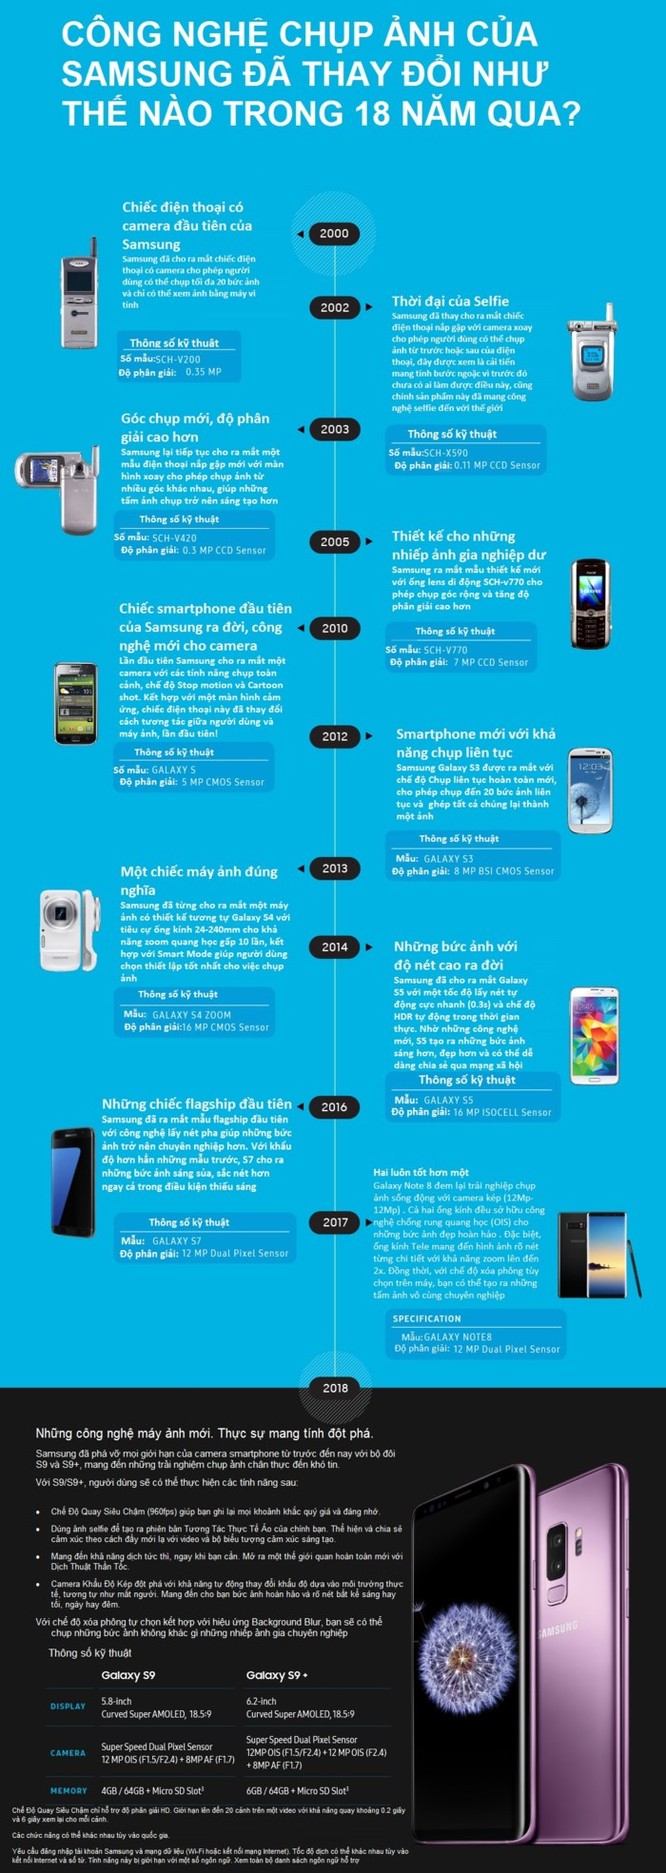 Samsung sau 18 năm: Từ những sáng tạo sơ khai cho đến cuộc cách mạng thị giác - Ảnh 1